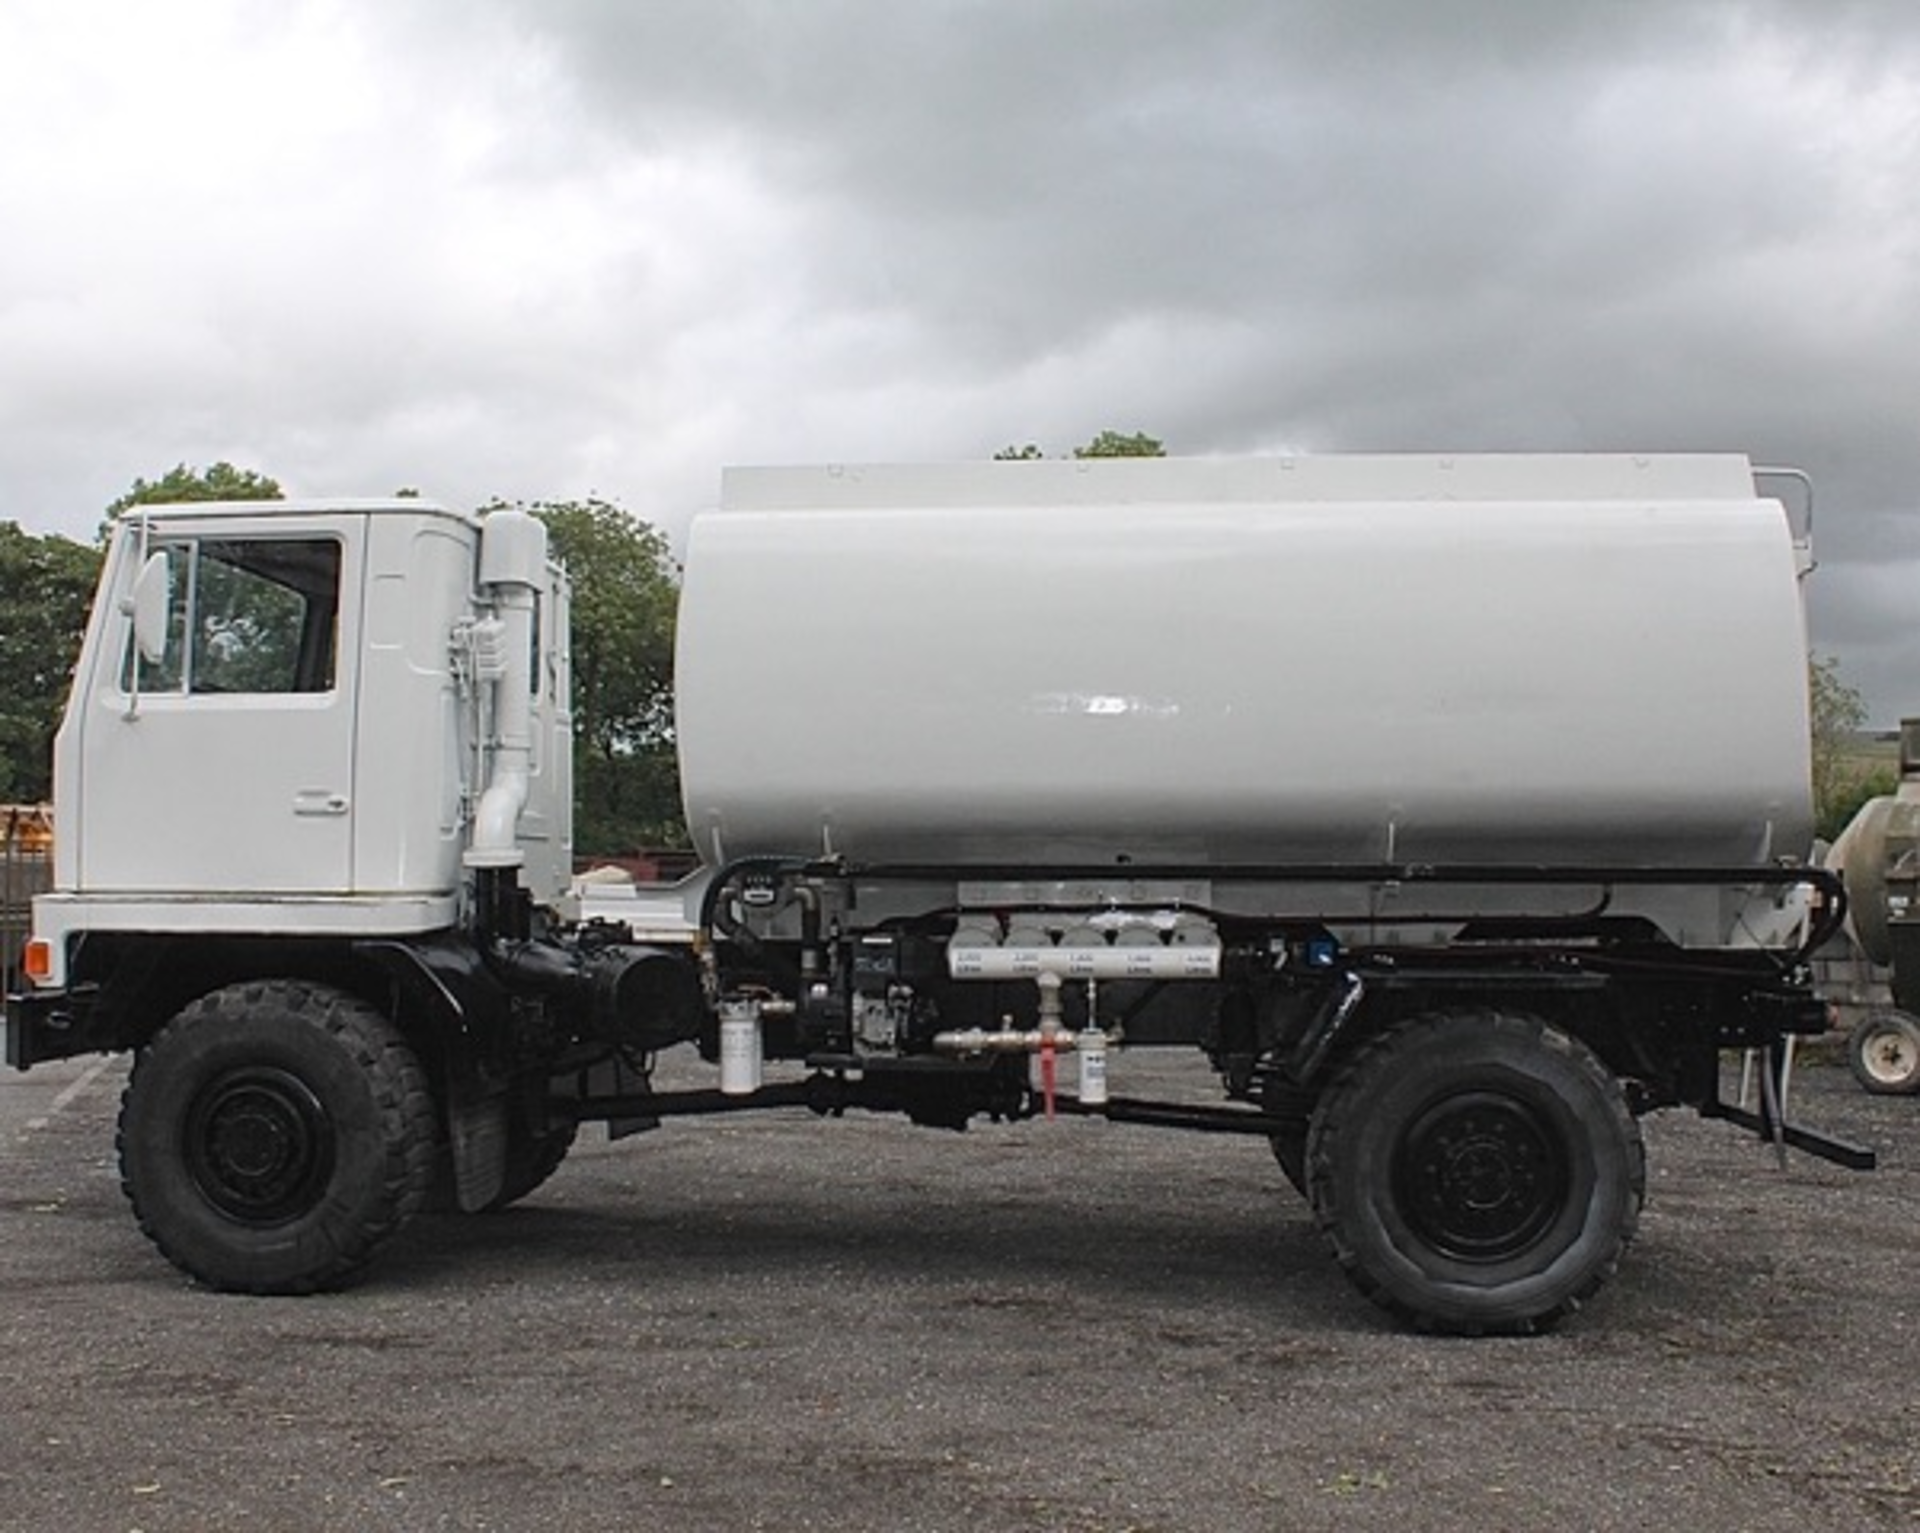 Bedford TM 12,000 litre fuel tanker
VIN: 101530
c/w MOD form 654 for registration
SKU 1486 - Image 2 of 11